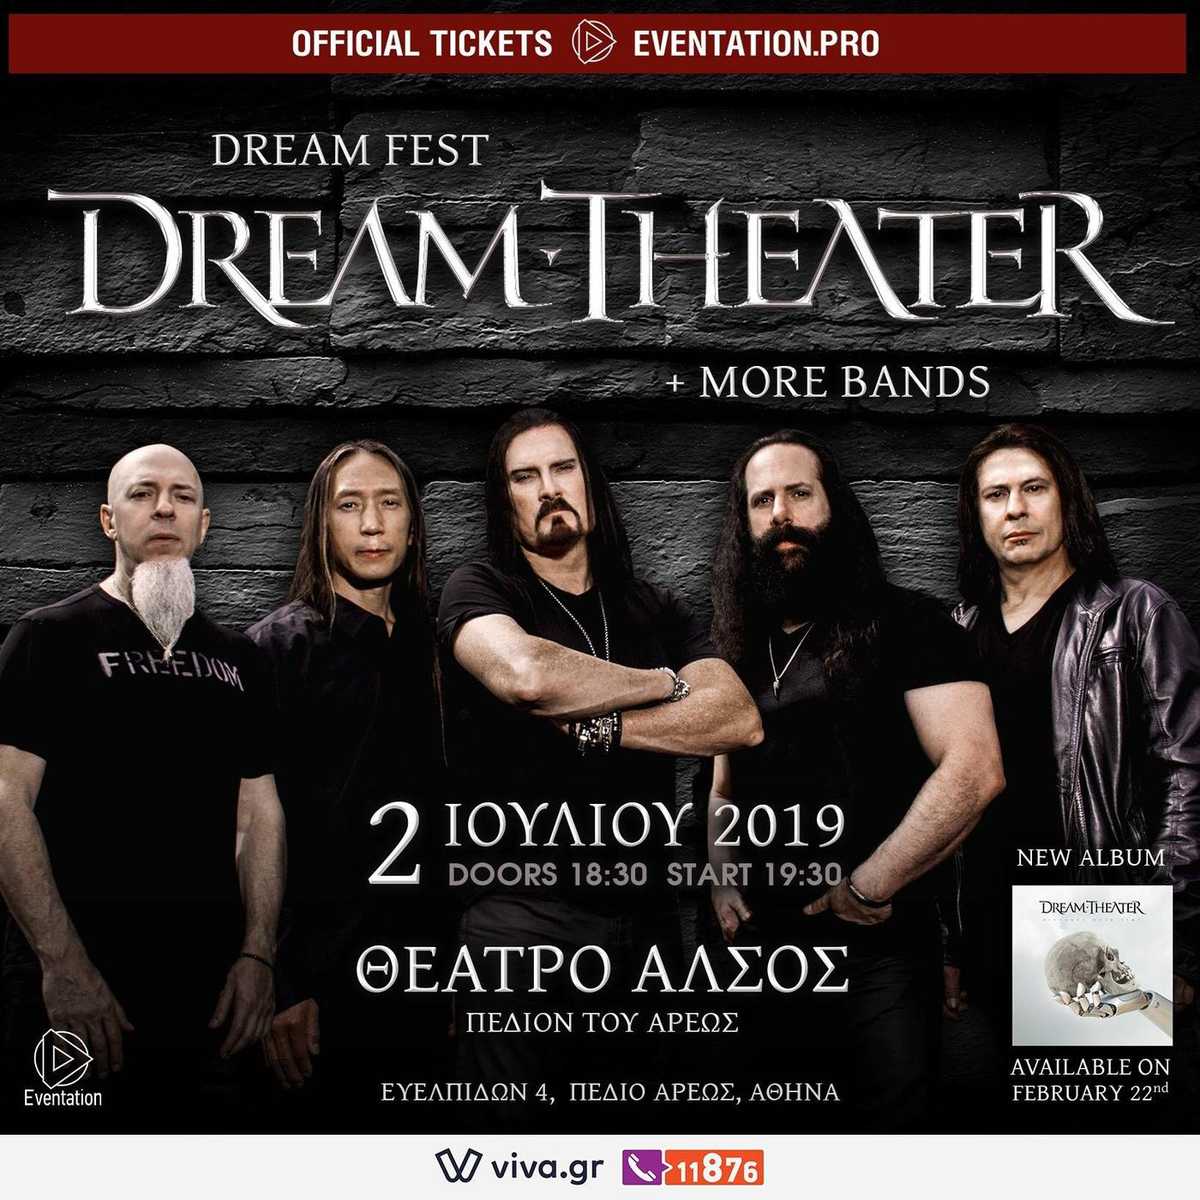 Οι Dream Theater ξανά στην Ελλάδα μετά από 8 χρόνια!